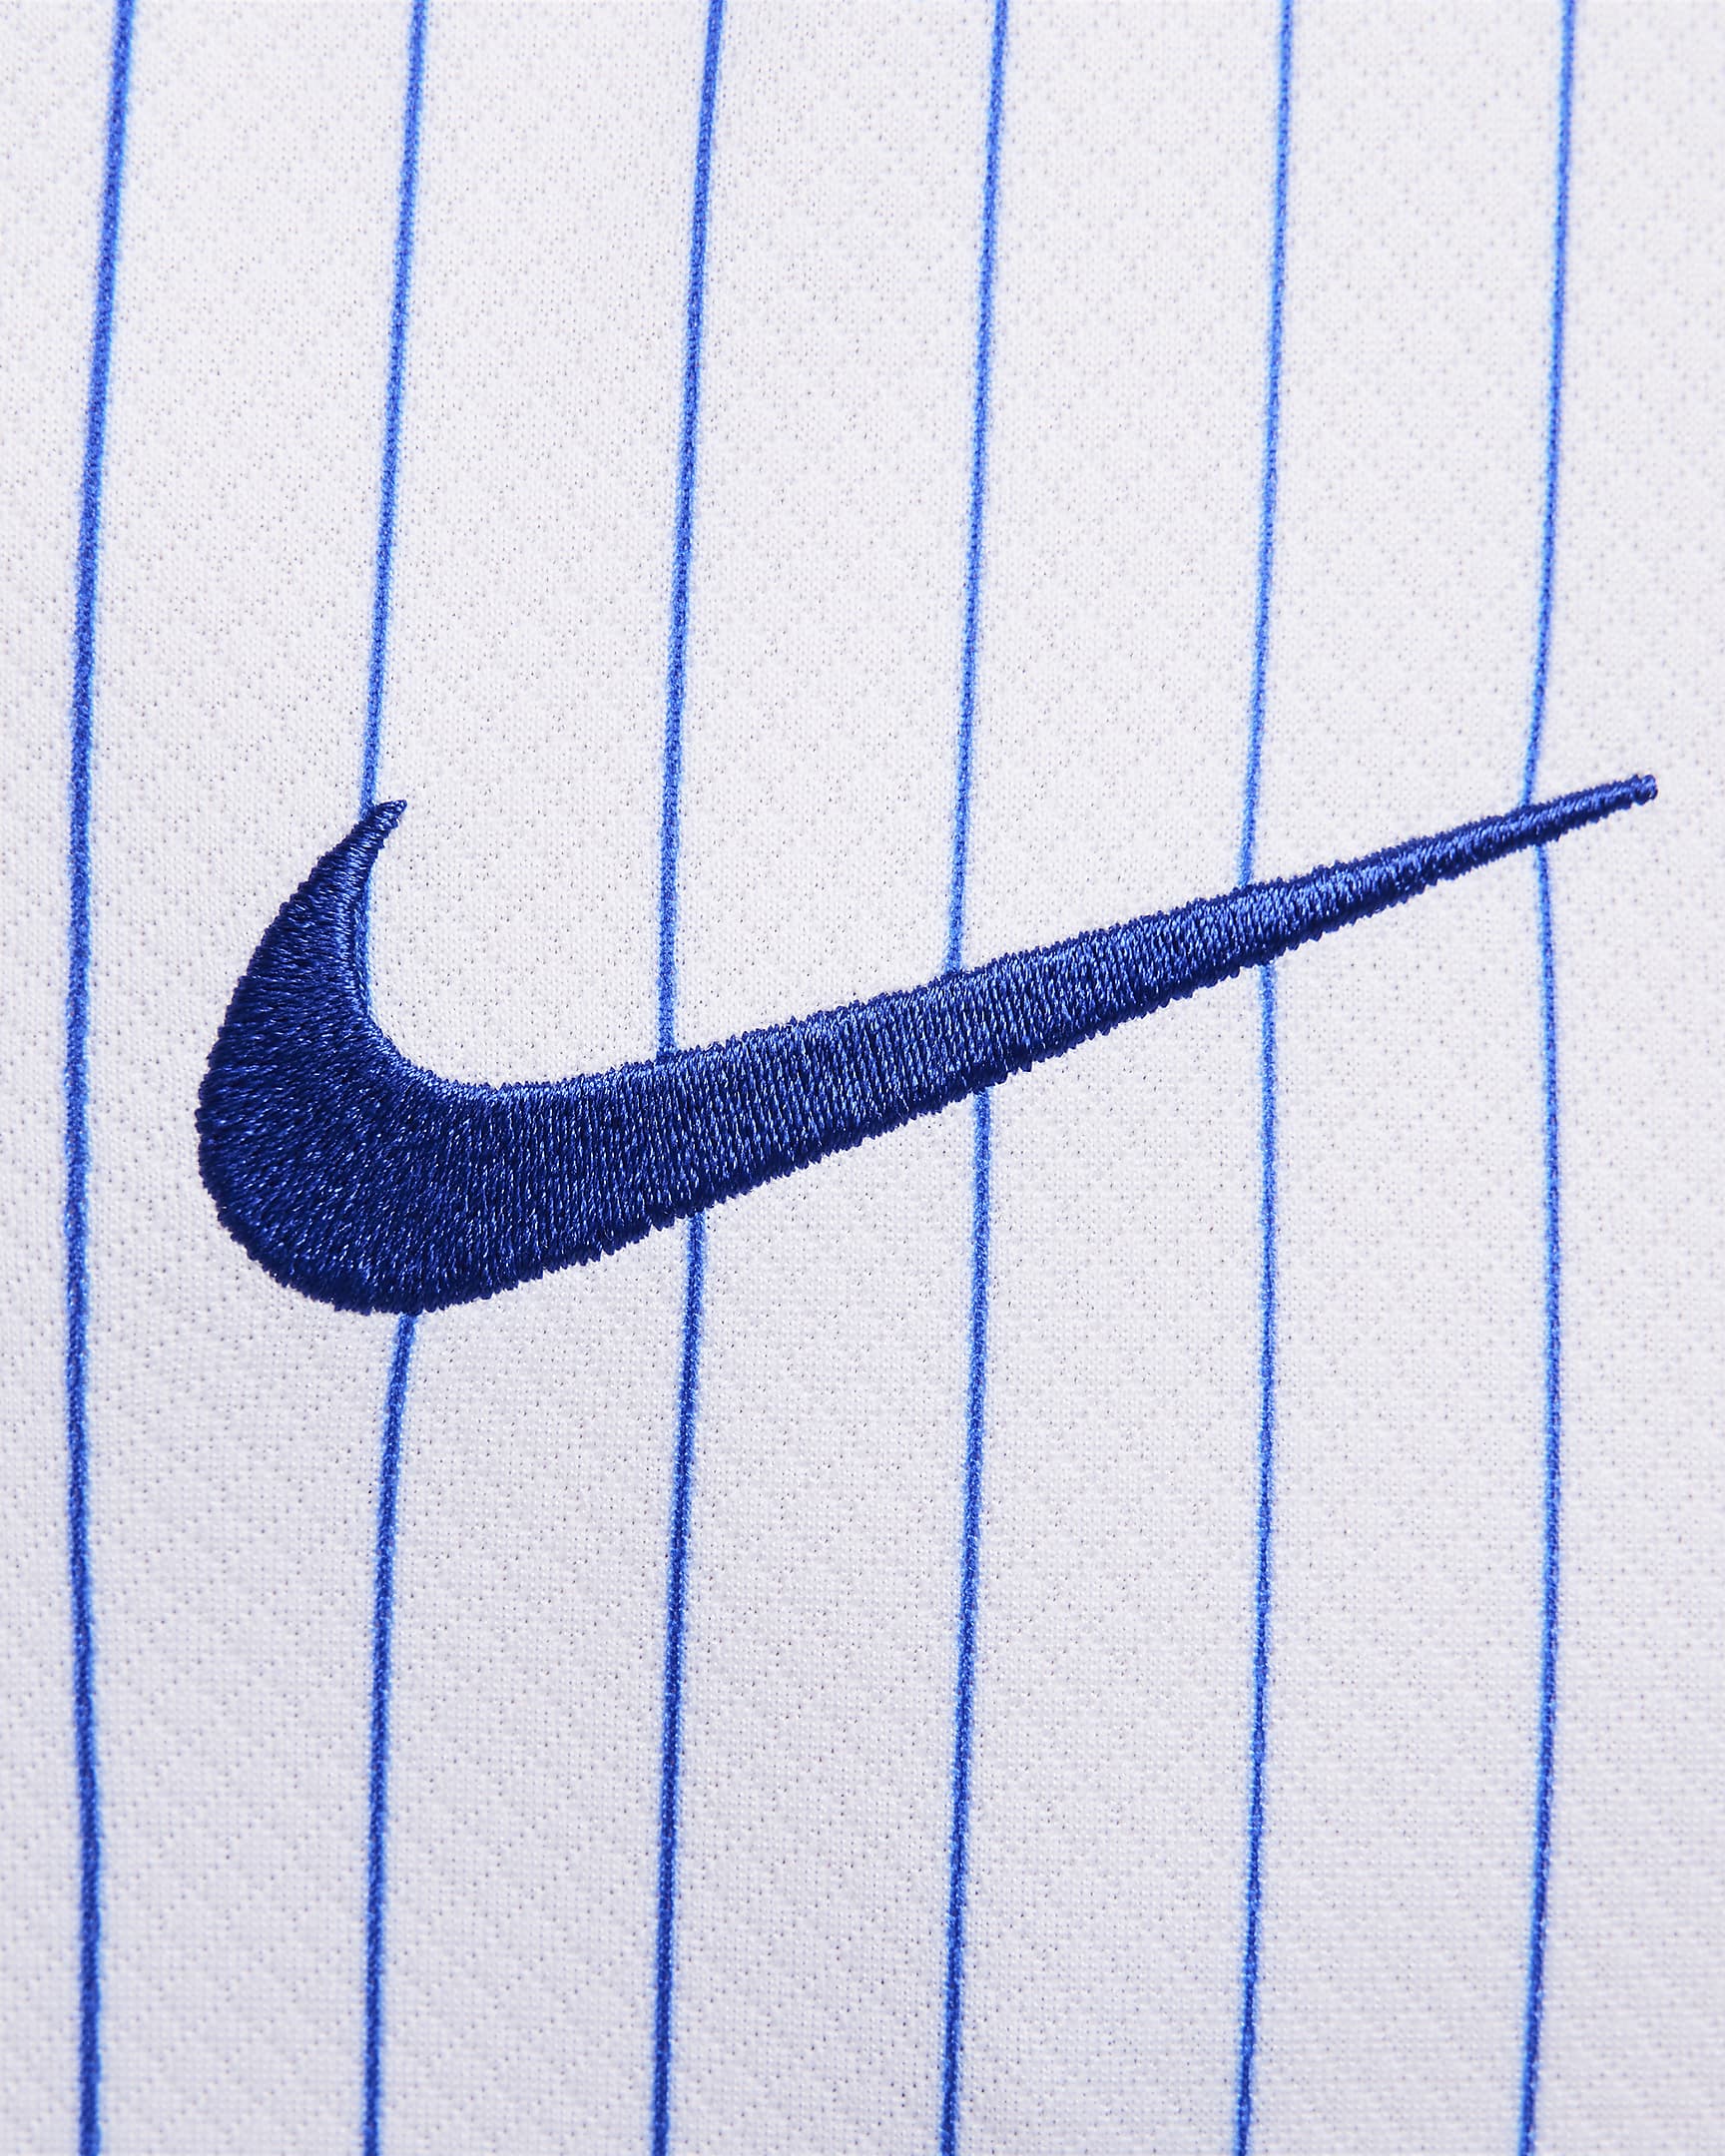 Camisola de futebol de réplica Nike Dri-FIT do equipamento alternativo Stadium FFF (equipa masculina) 2024/25 para homem - Branco/Azul Bright/Vermelho University/Azul Bright